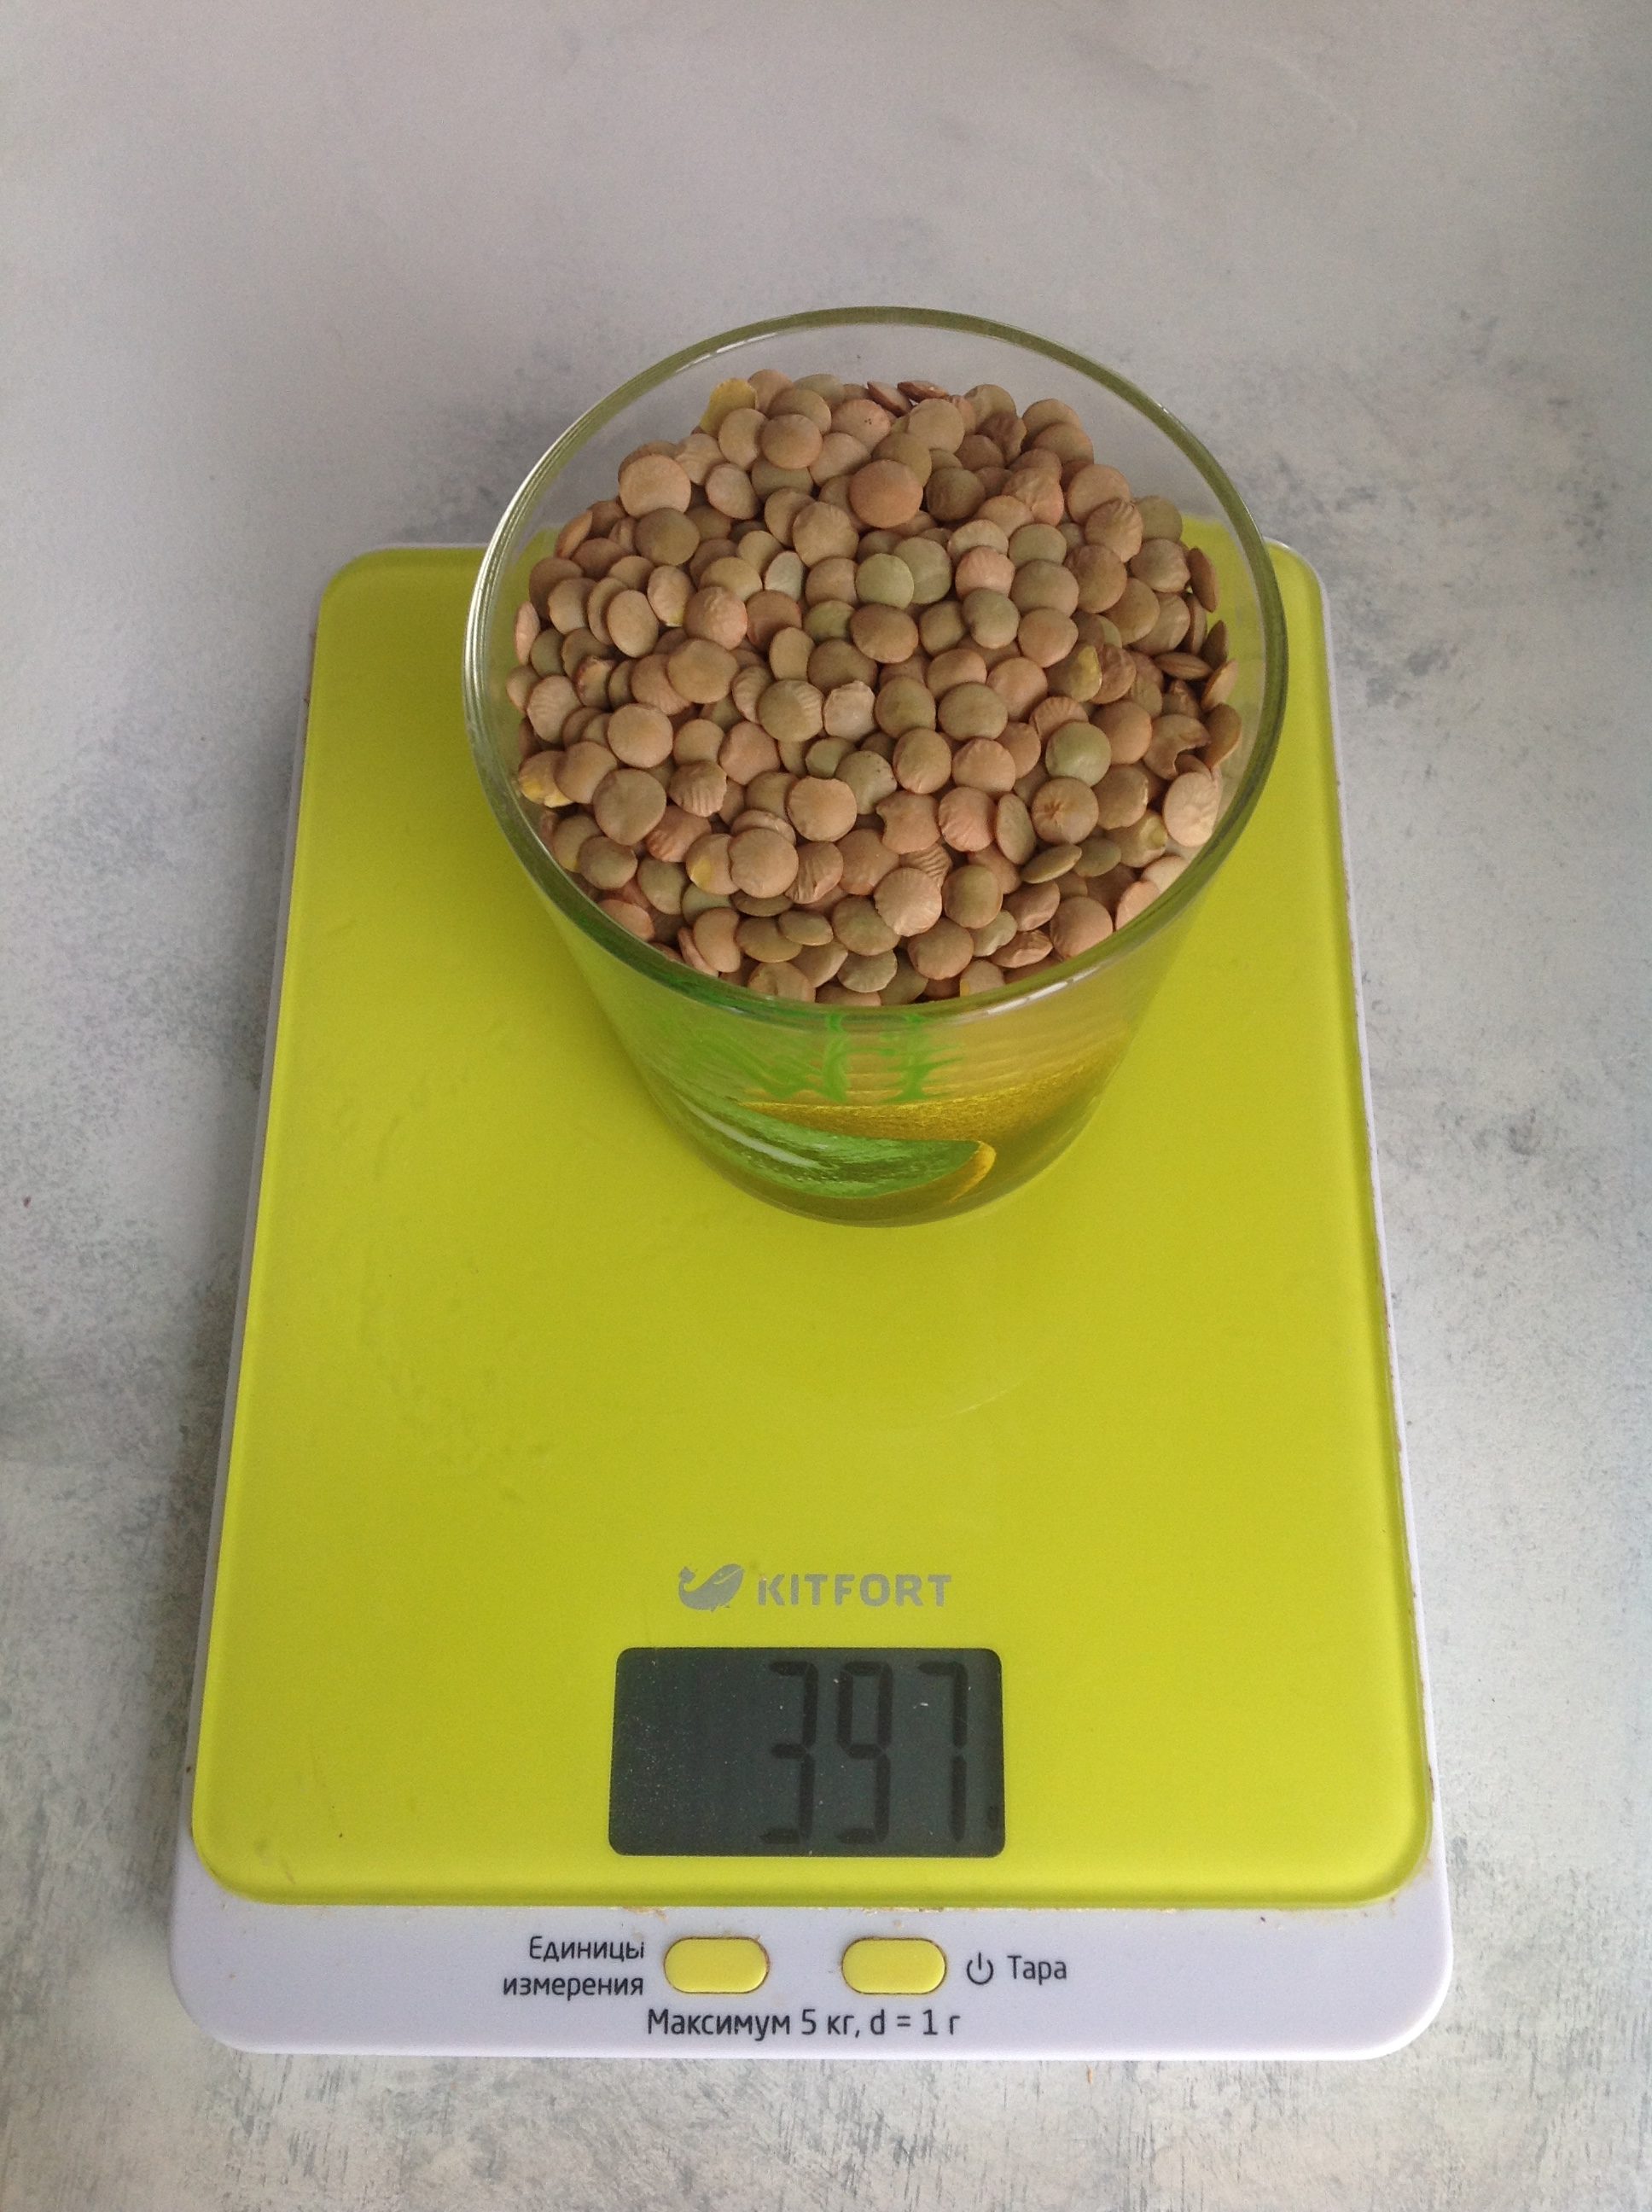 Yeşil mercimek 250 ml'lik bir bardakta ne kadar kuru ağırlığa sahiptir?